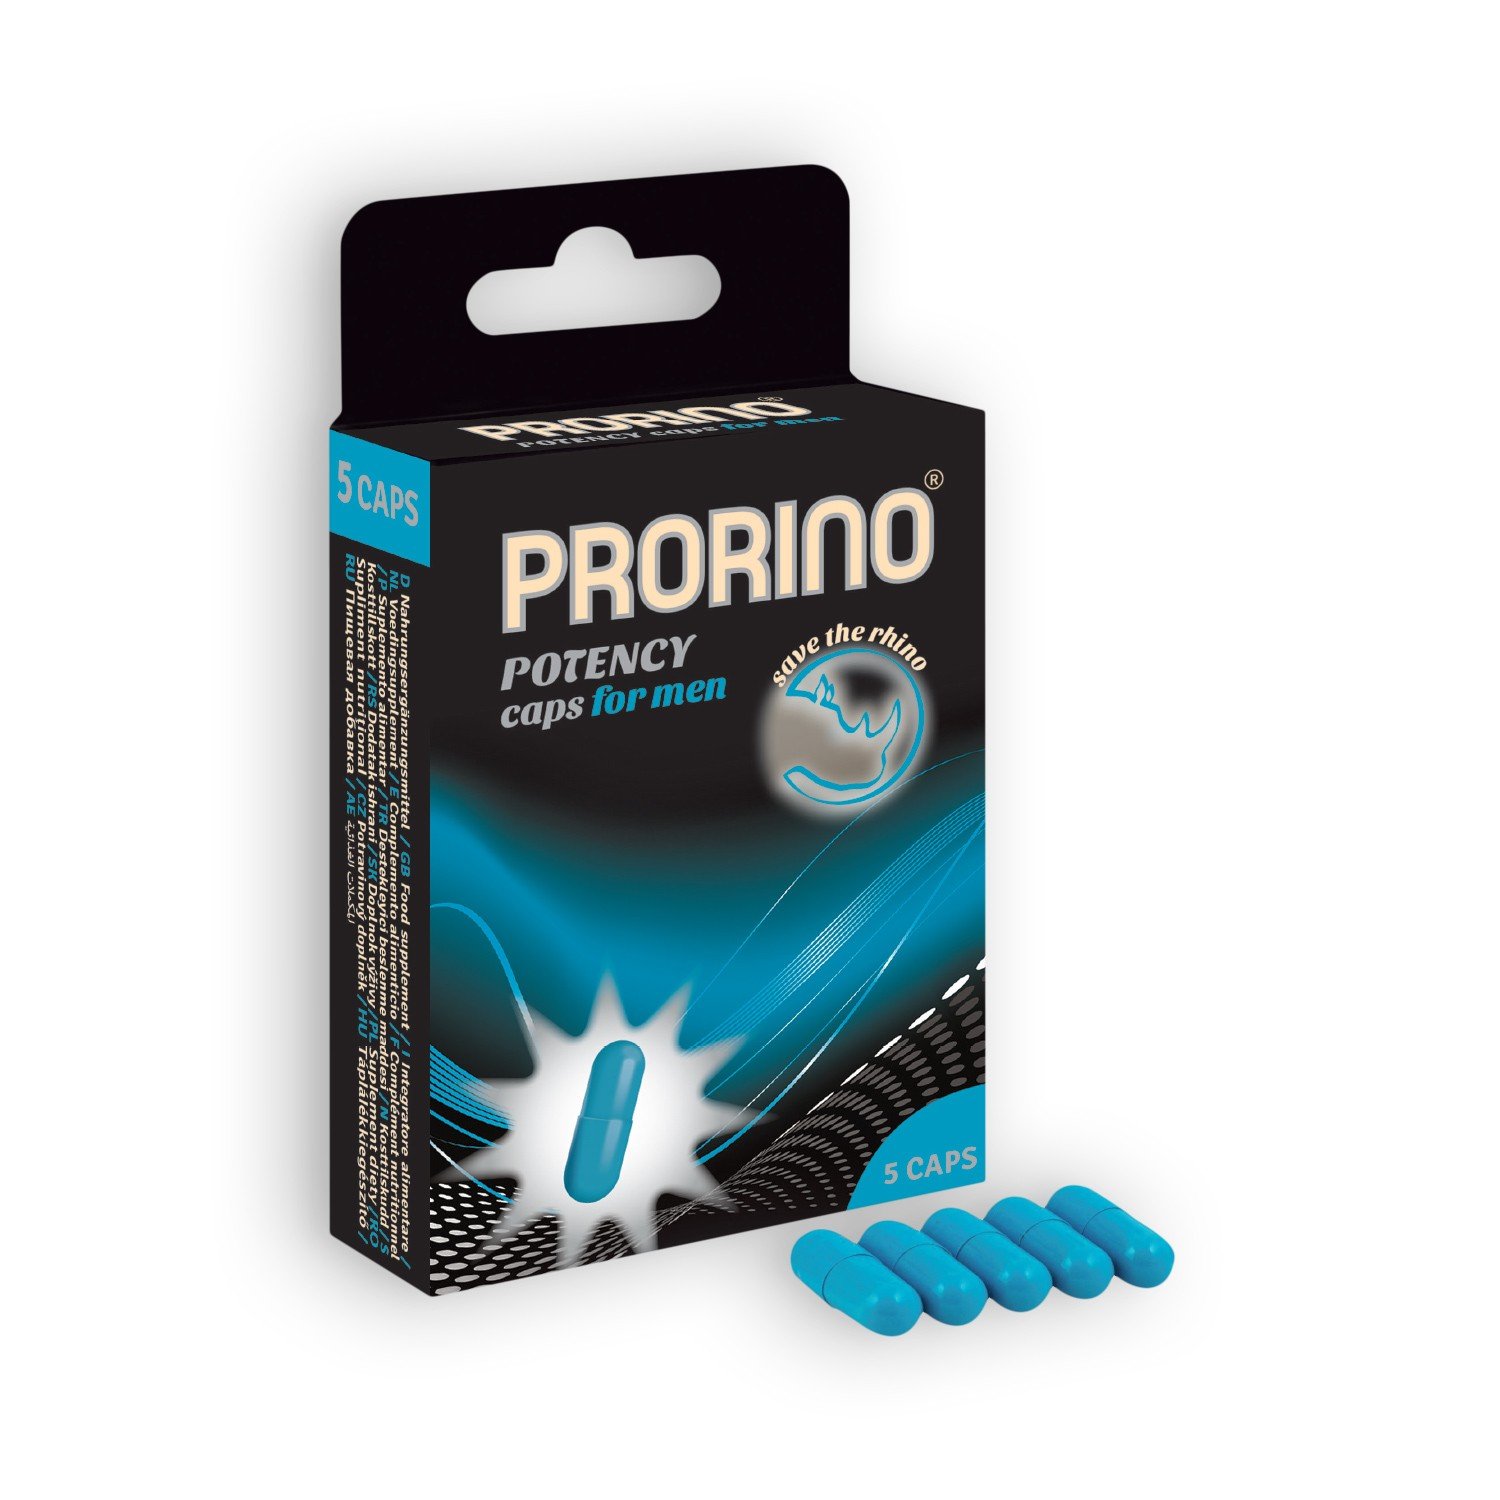 capsulas-estimulantes-prorino-potency-caps-para-homem-5-capsulas-pharma-prorino